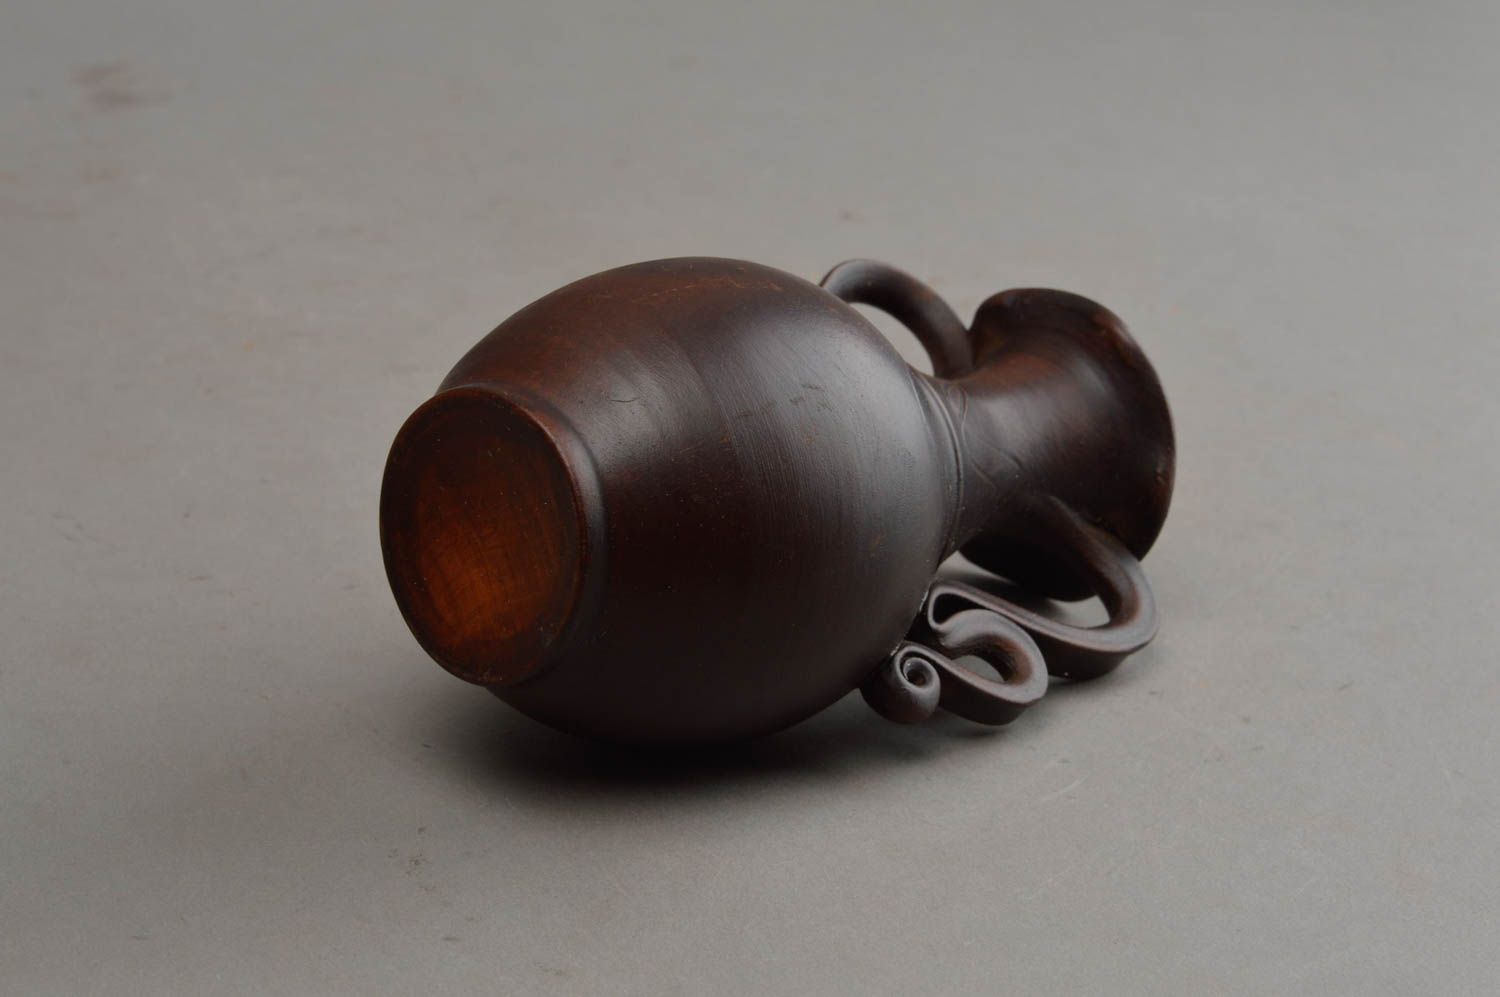 Jolie cruche en céramique avec anses miniature faite main décorative originale photo 9